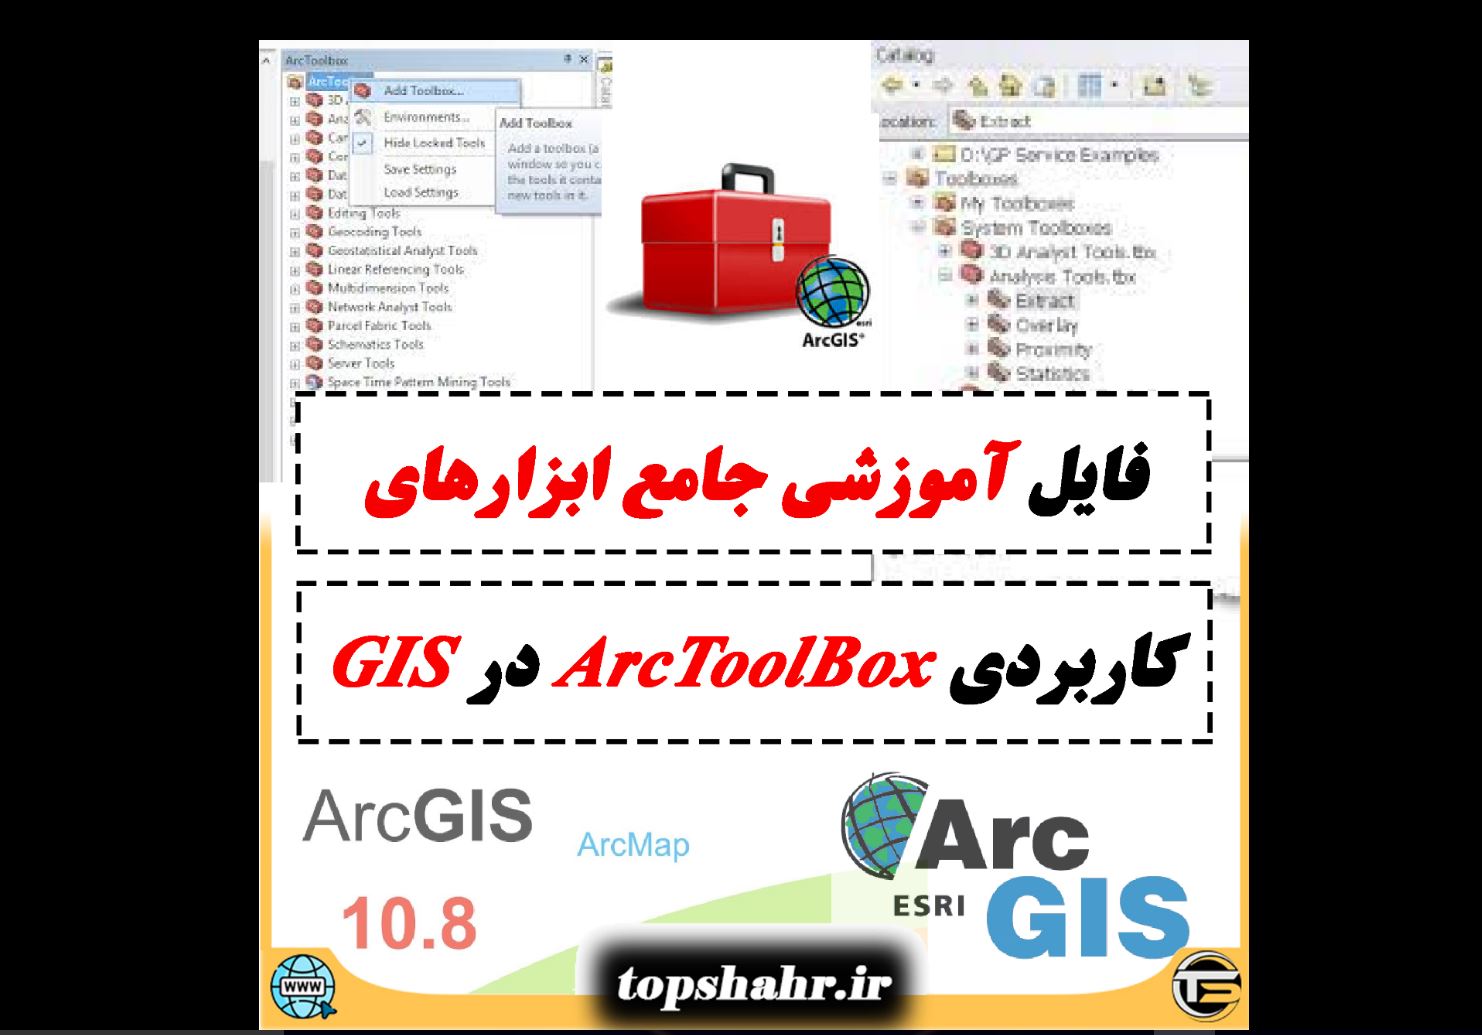  آموزش ArcToolbox  - ابزارهای کاربردی در ArcToolbox  - ArcToolbox   در جی ای اس - جی ای اس - Arc Gis - Arc Map - آموزش ArcToolbox  در آرک مپ